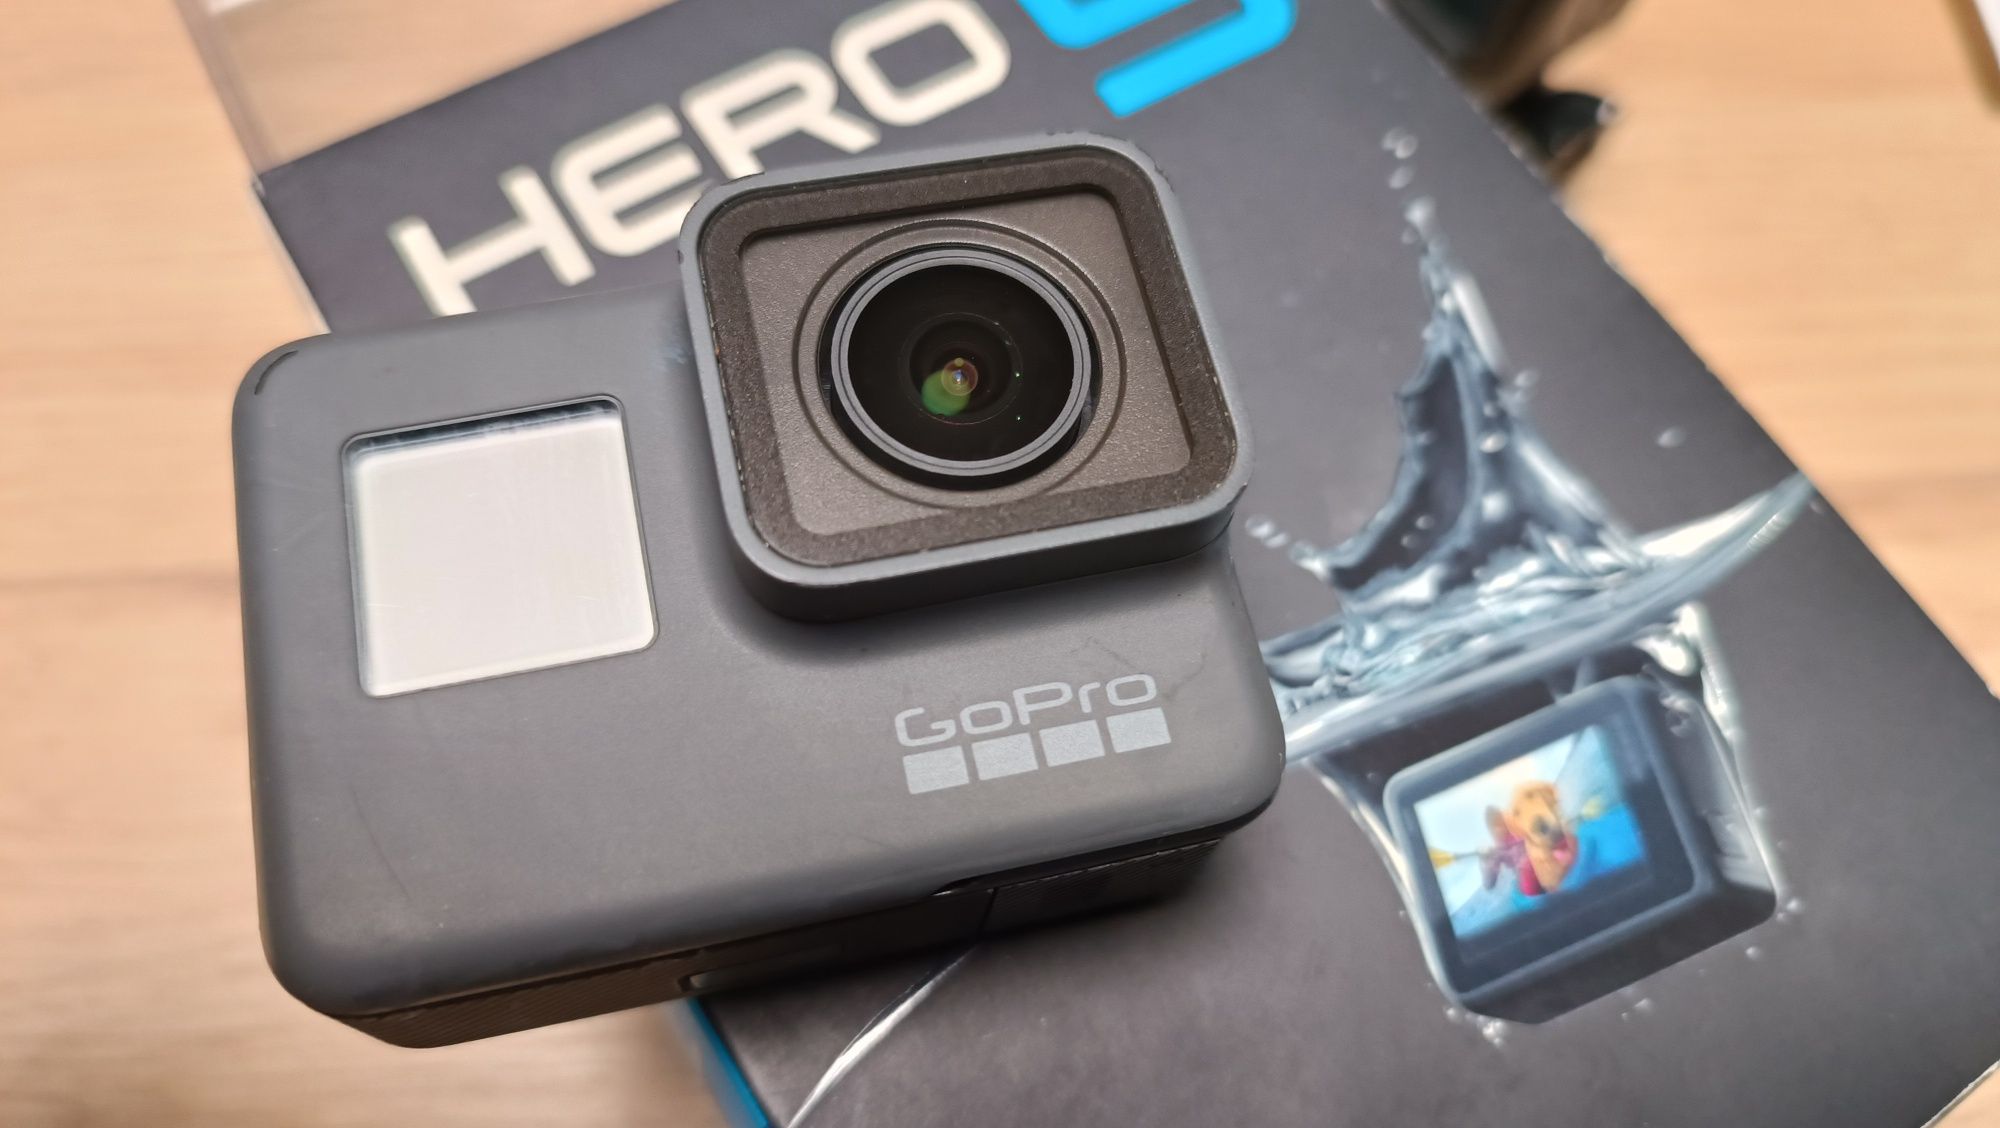 GoPro 5 hero Black + Karma Grip - Stabilizator wszystko sprawne